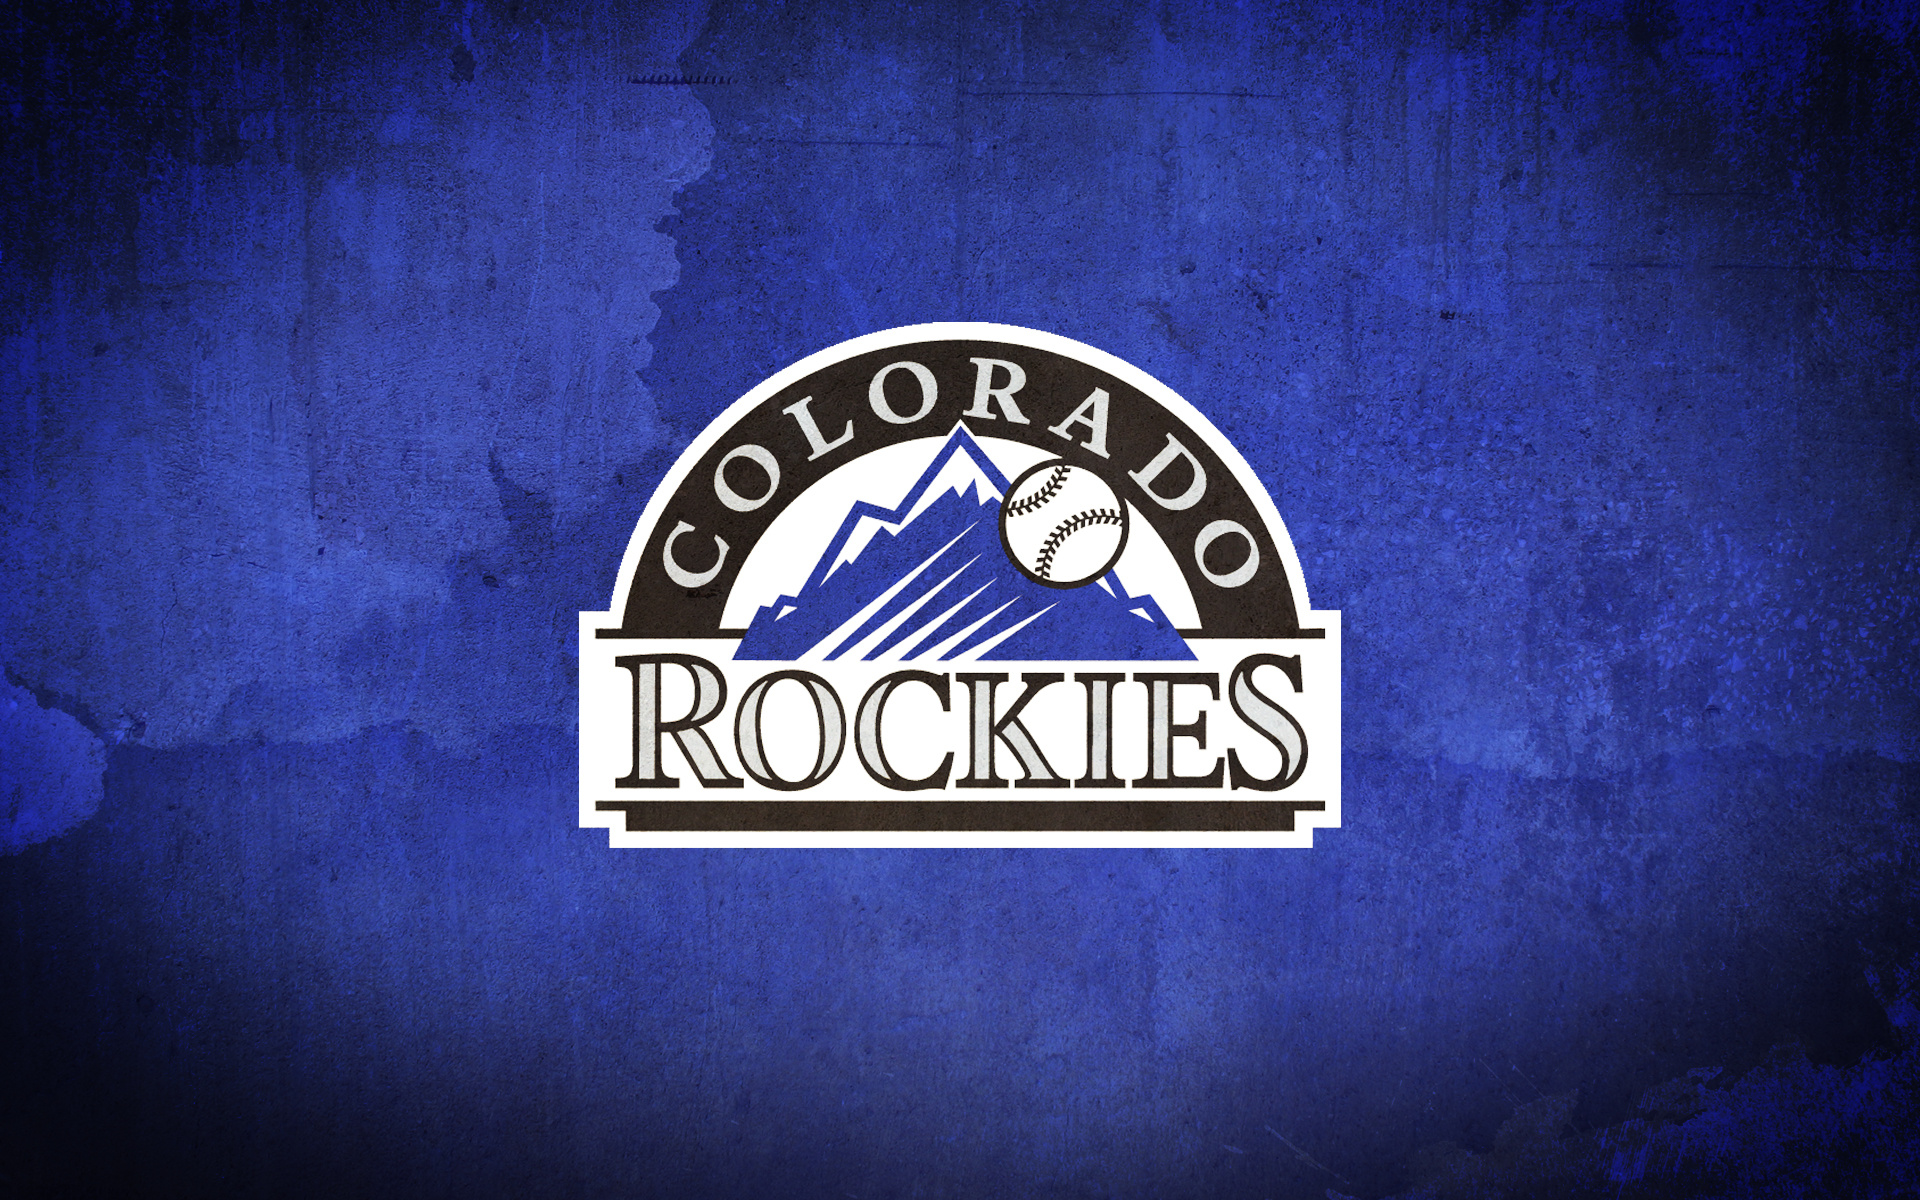 Colorado Rockies, logo 4k wallpaper, 1920x1200 HD Desktop